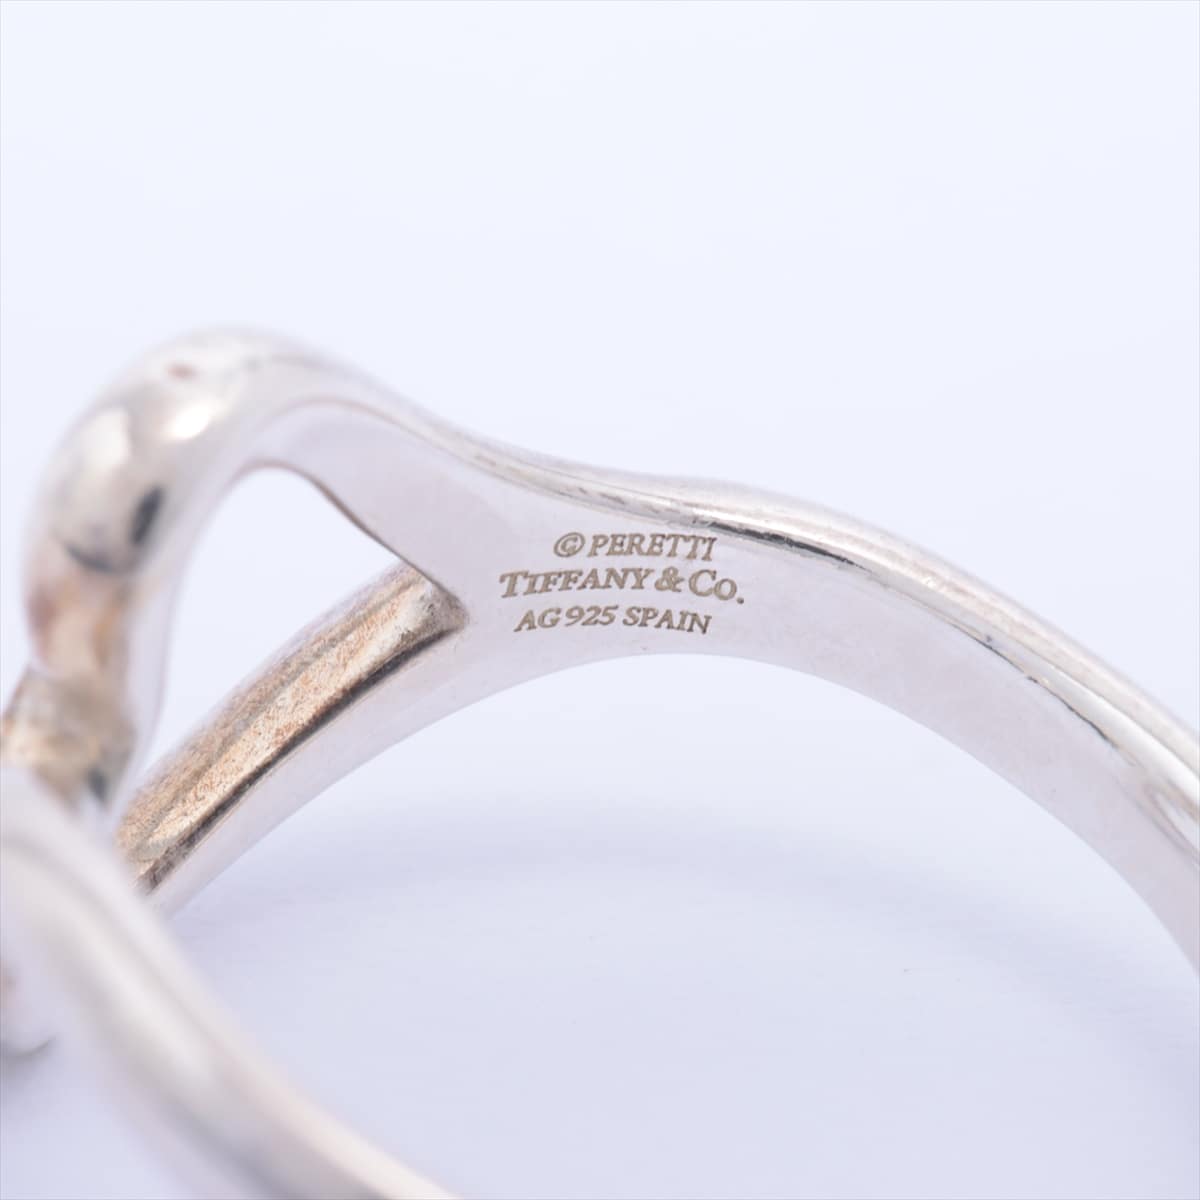 Tiffany Open Heart rings 925 2.4g Silver